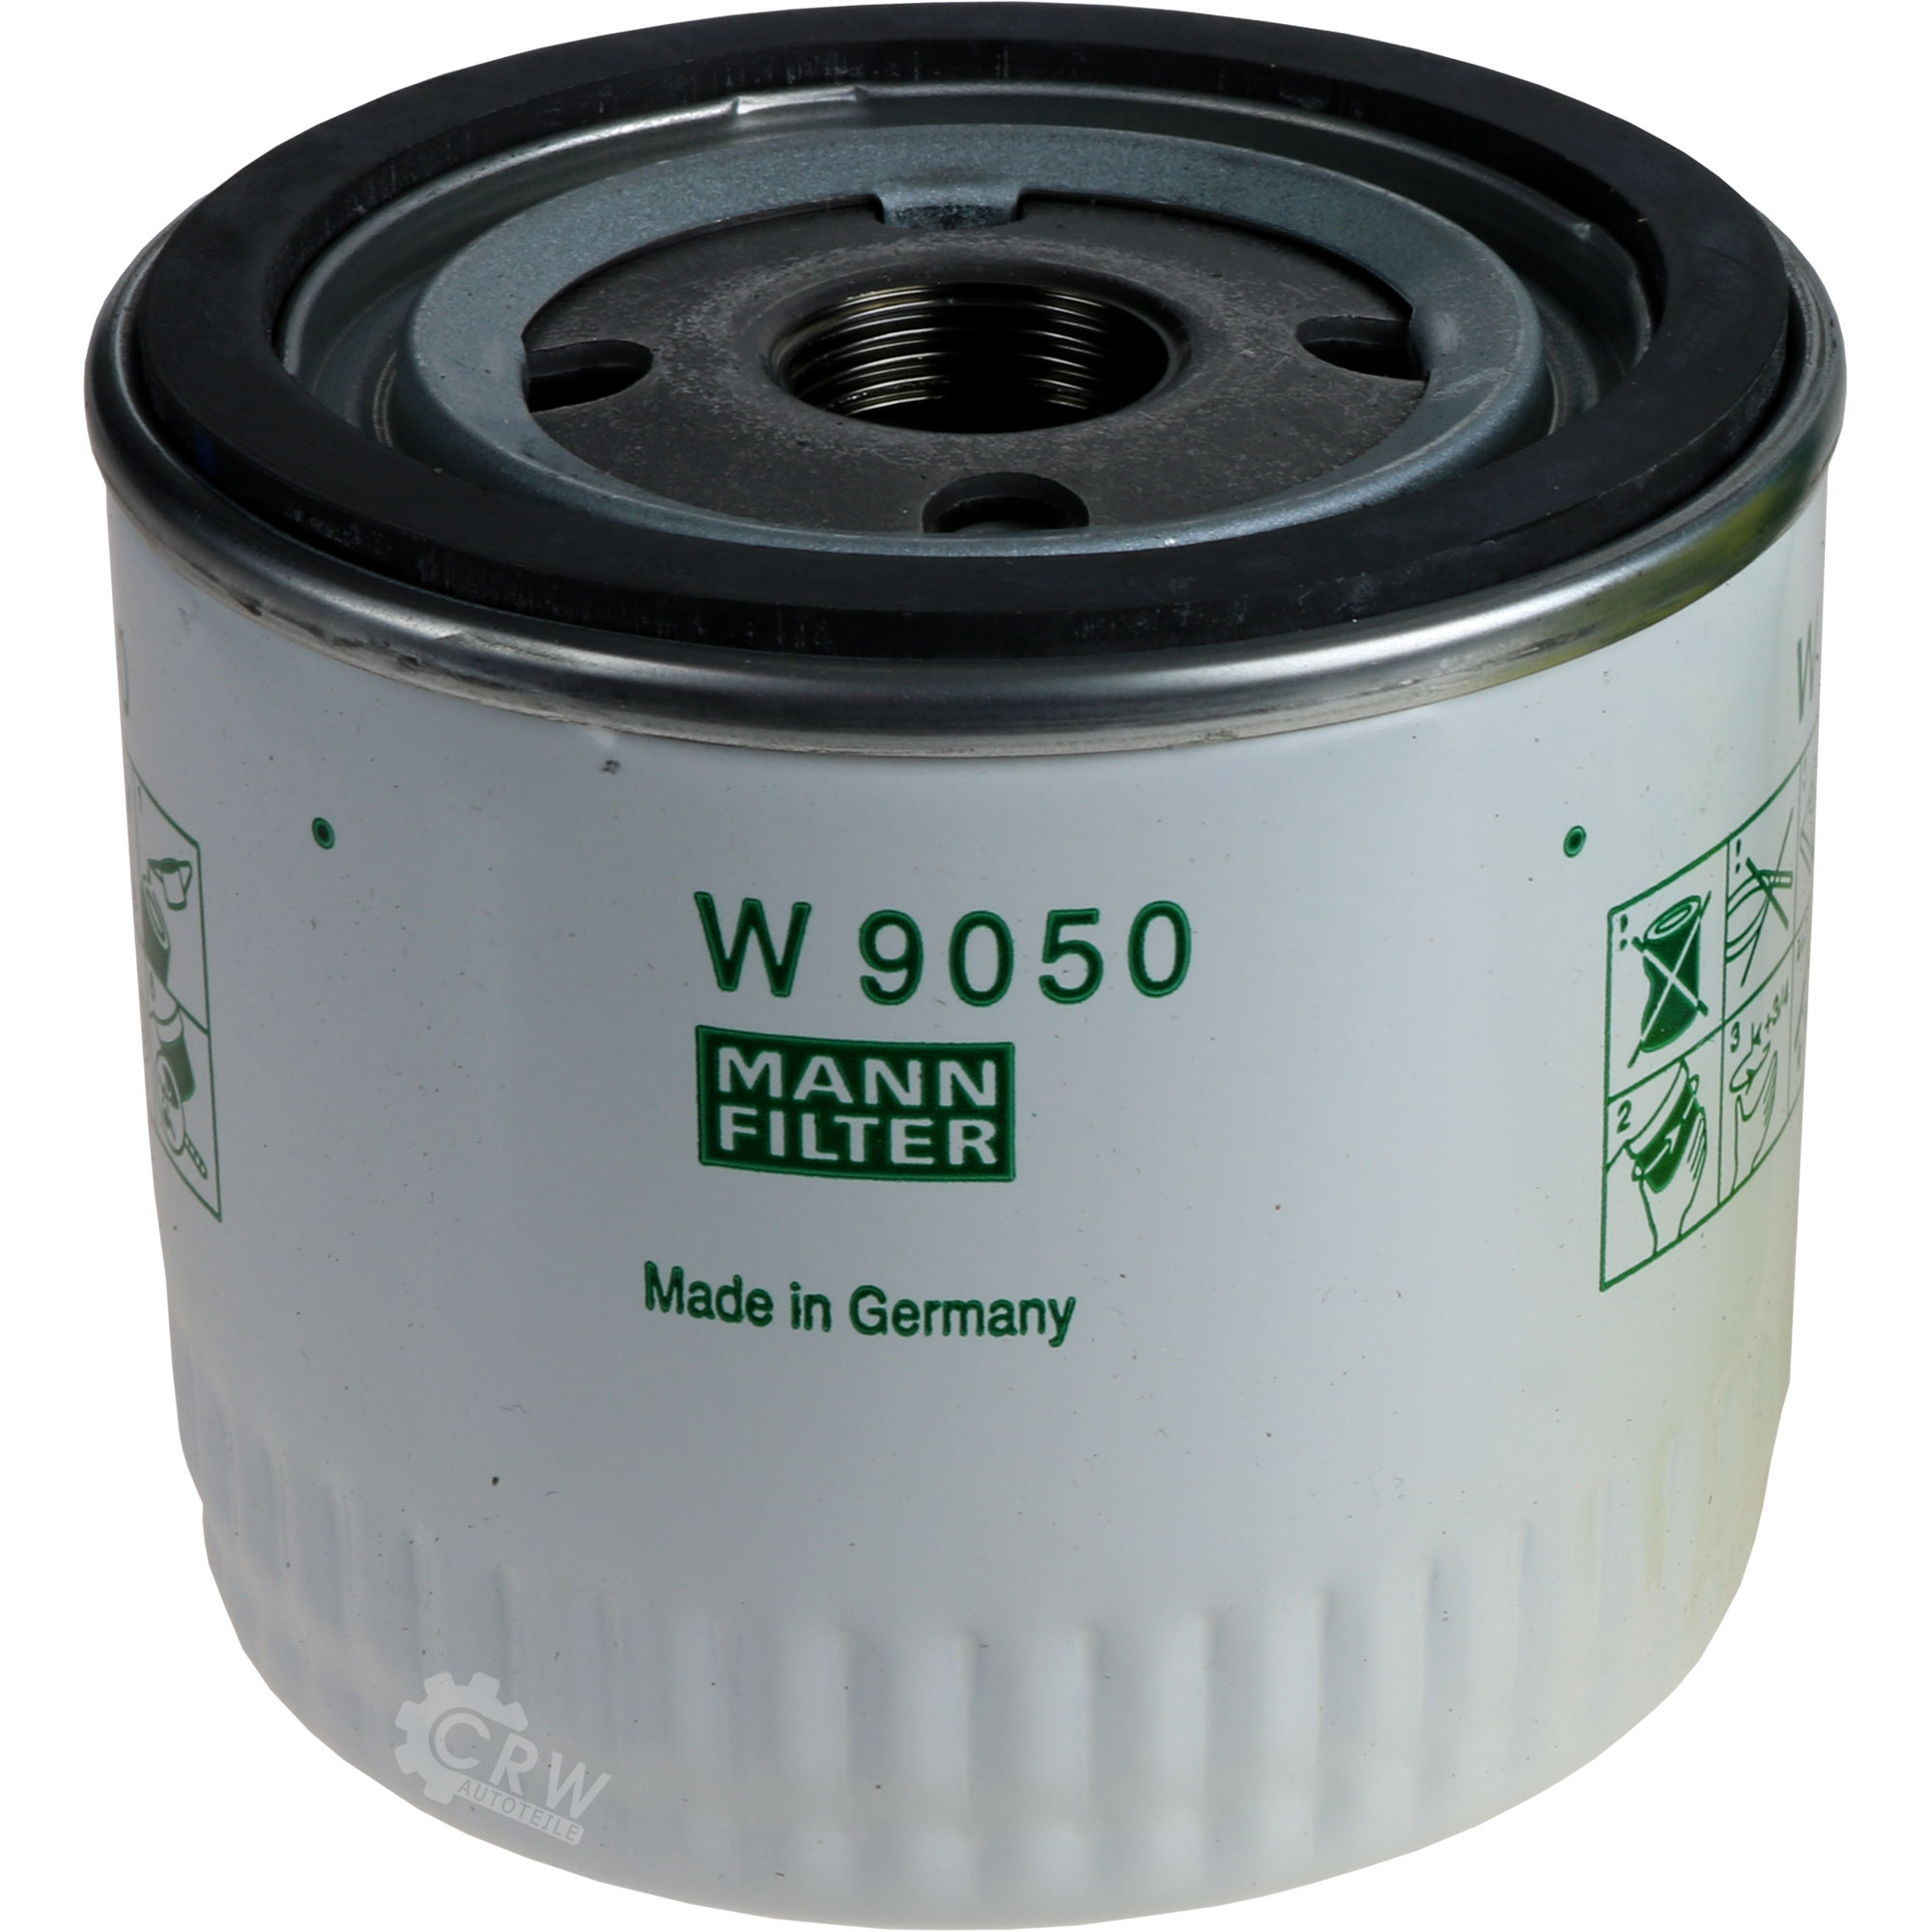 MANN-FILTER Ölfilter W 9050 Oil Filter